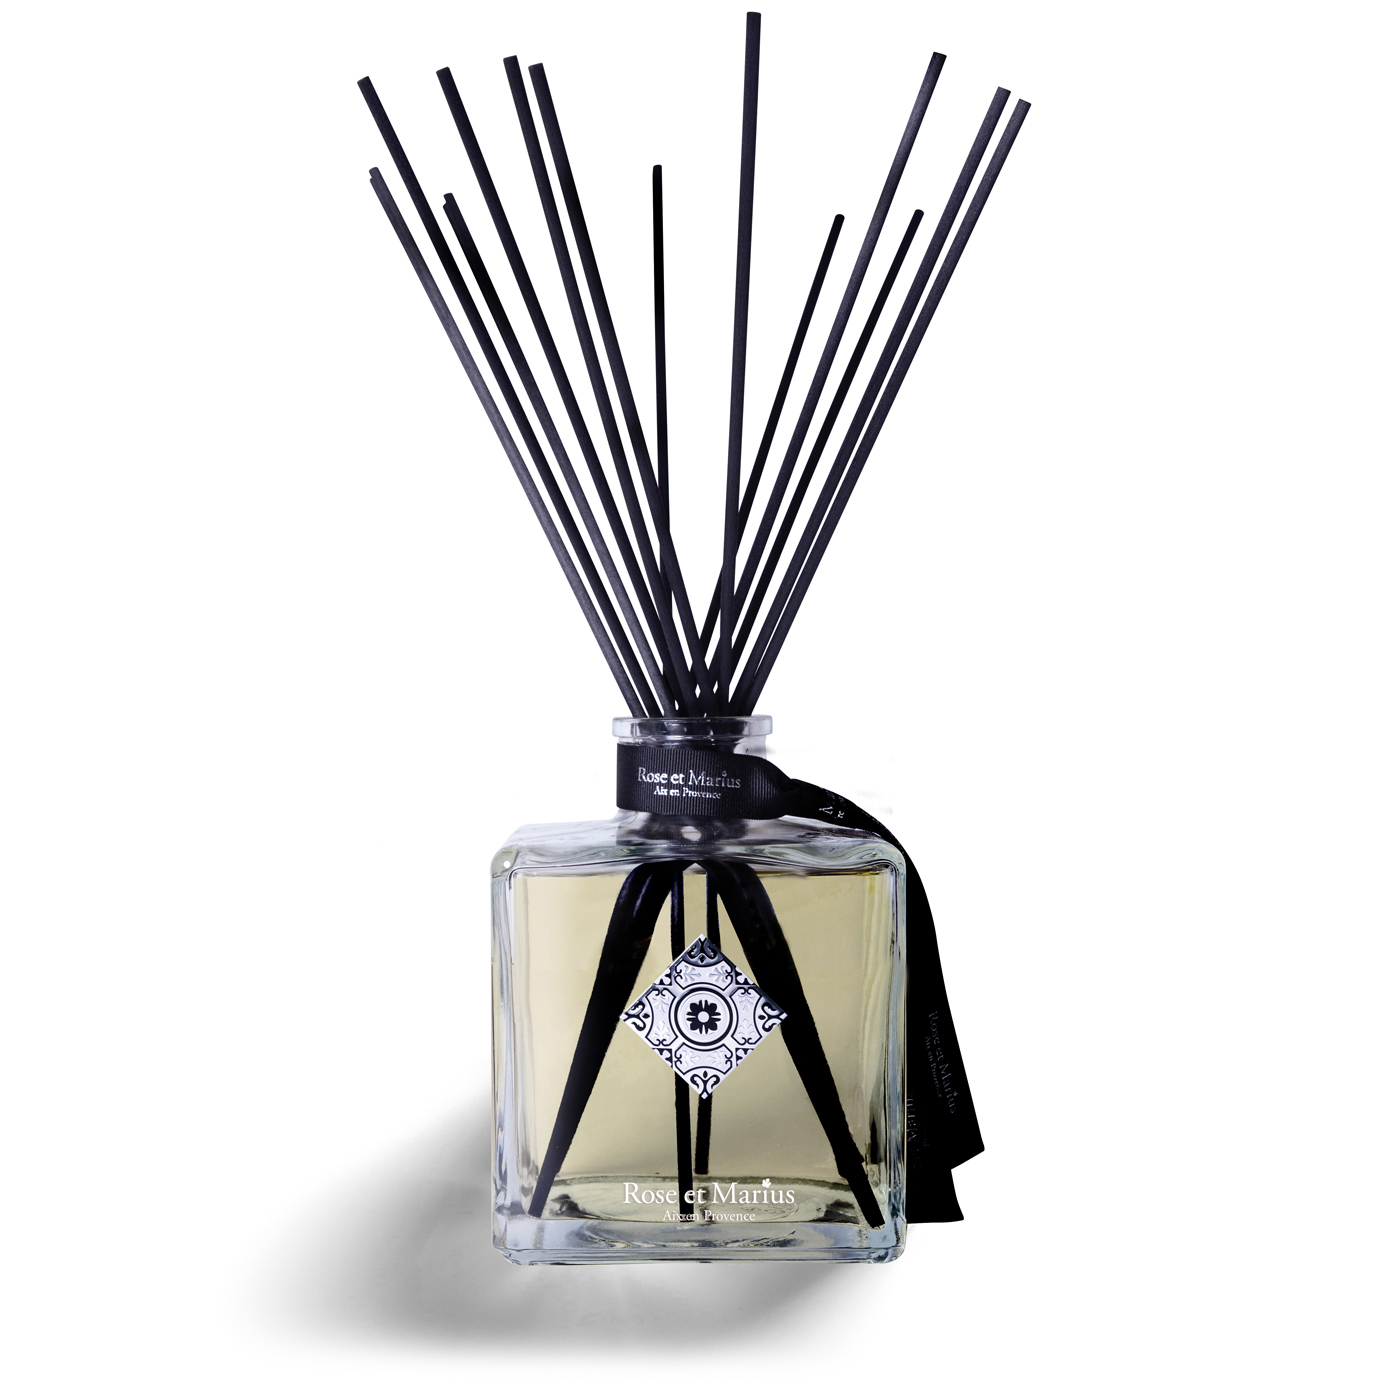 Découvrir, Bâtonnets parfumés exclusifs - Produits Corps & Maison